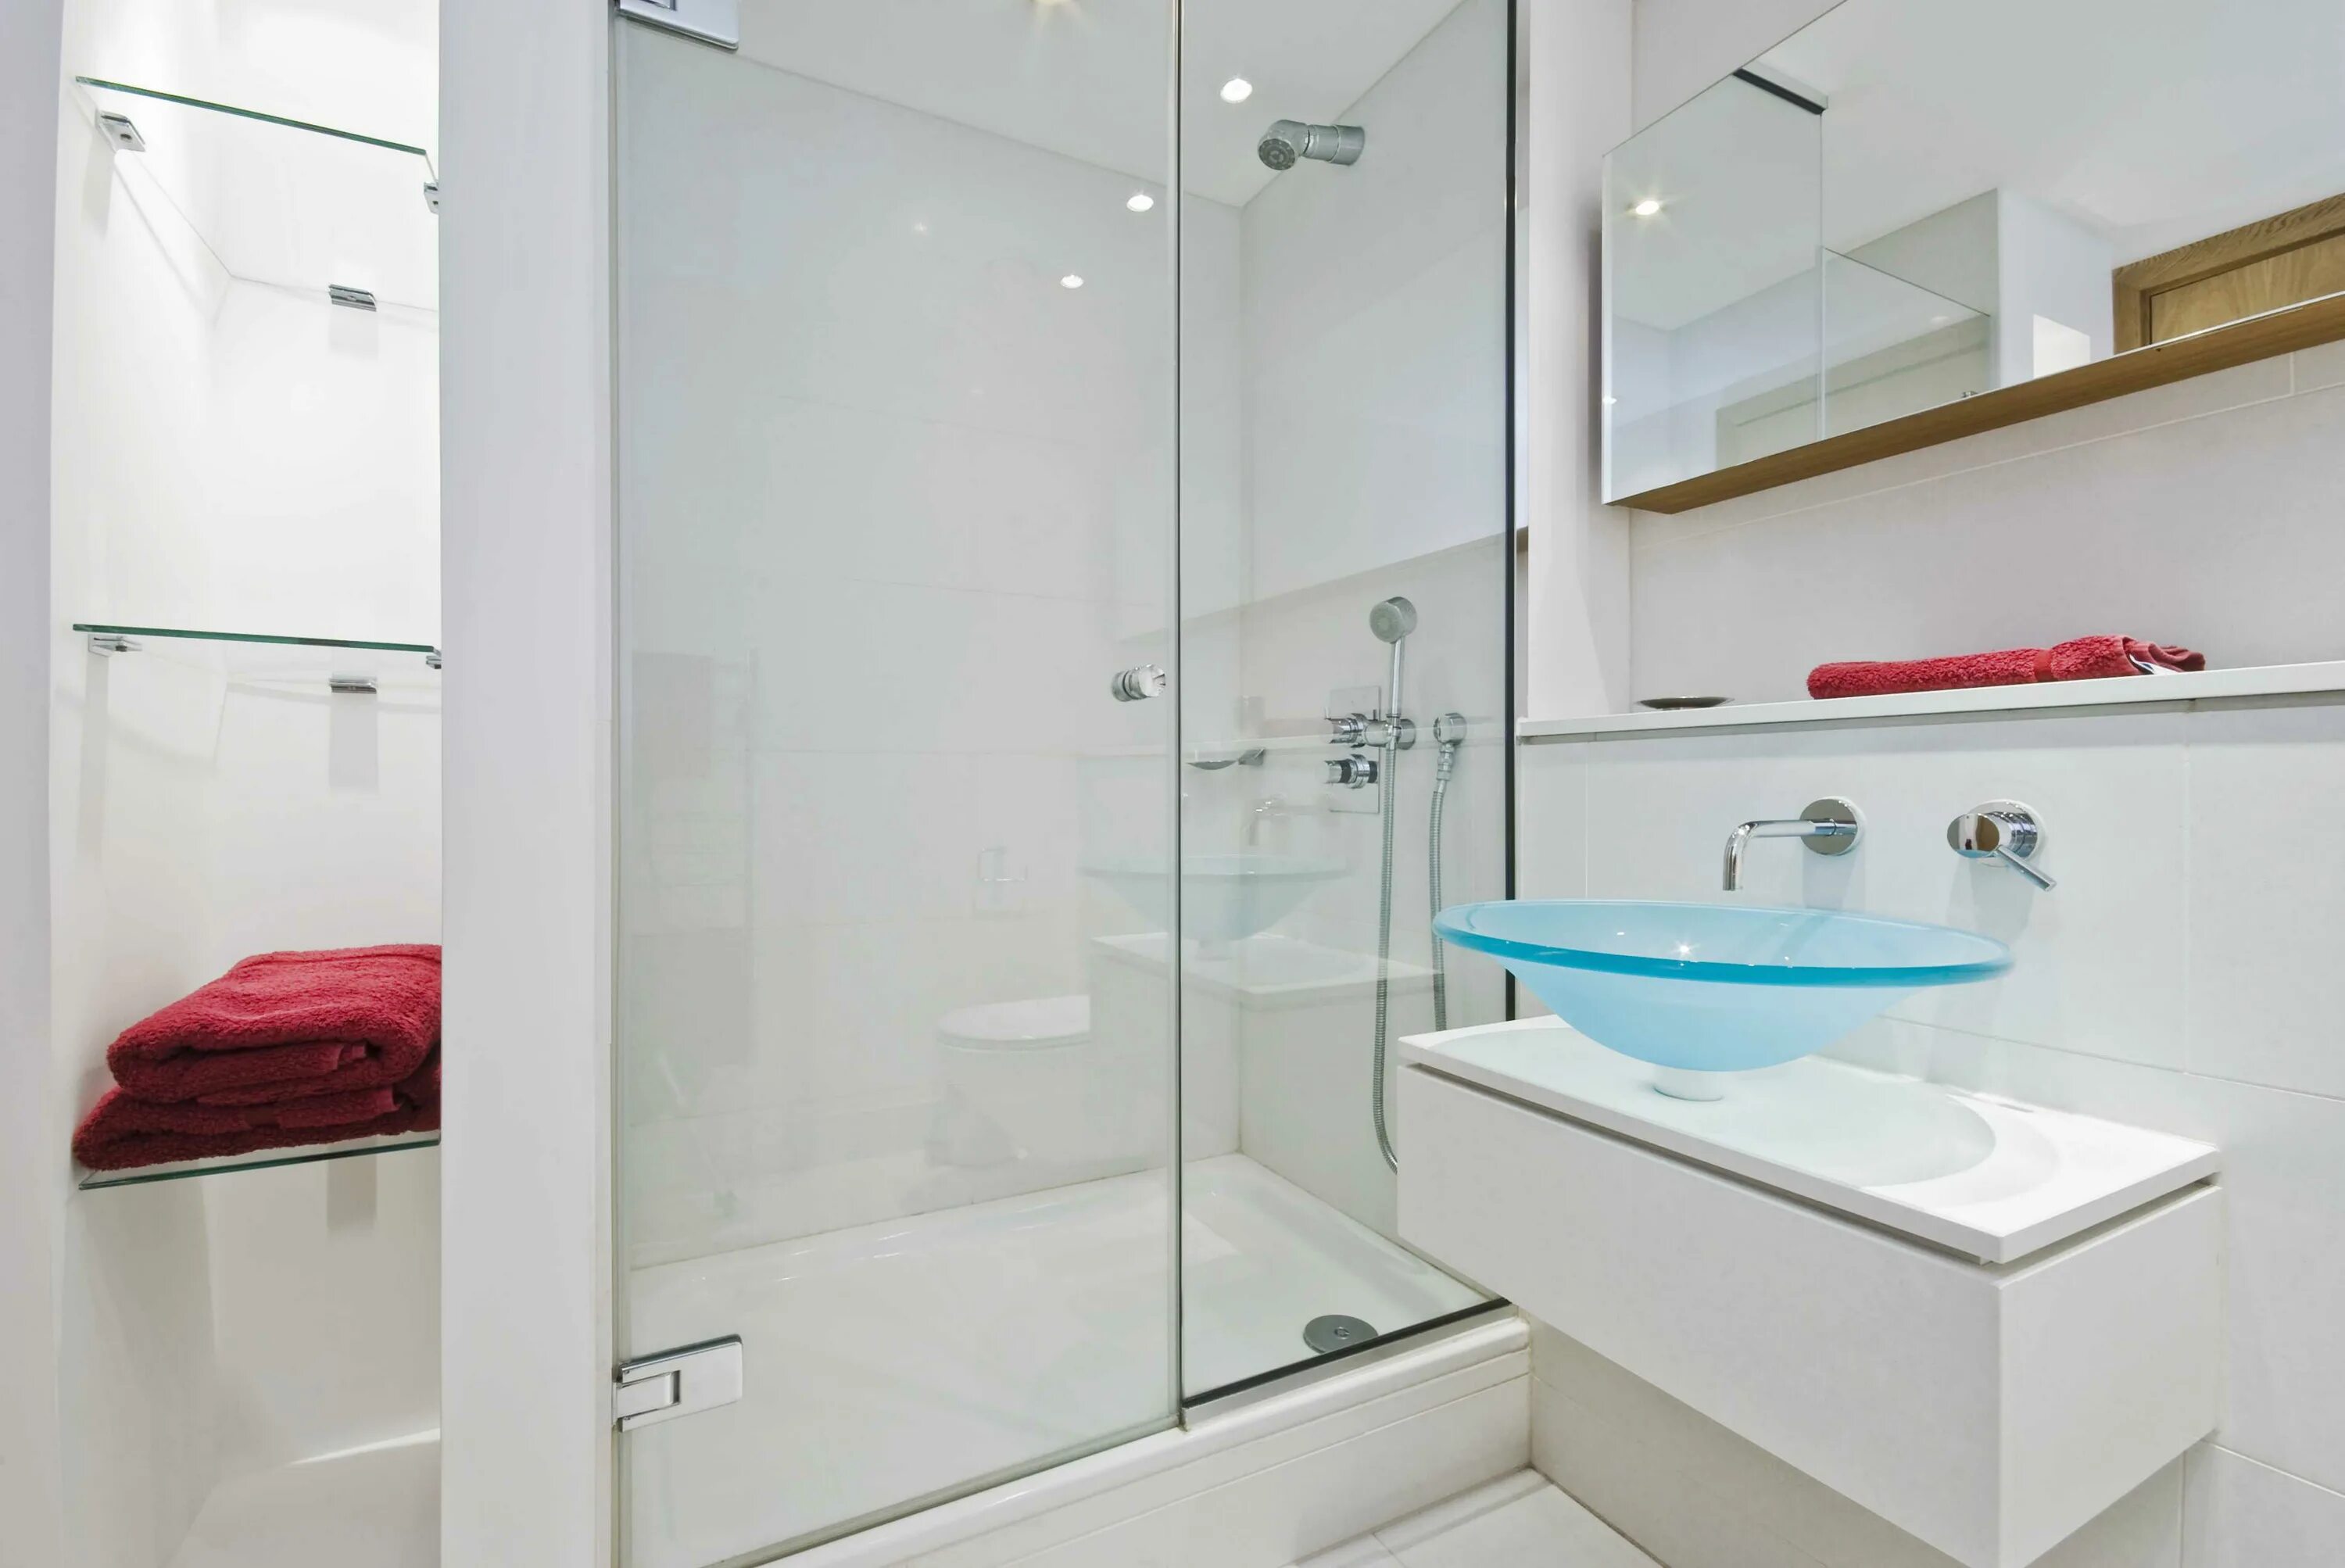 Ванная комната со стеклянной перегородкой. Стеклянная перегородка в ванную. Стеклянное ограждение для ванны. Ванна со стеклянной перегородкой. Стеклянный экран для ванны